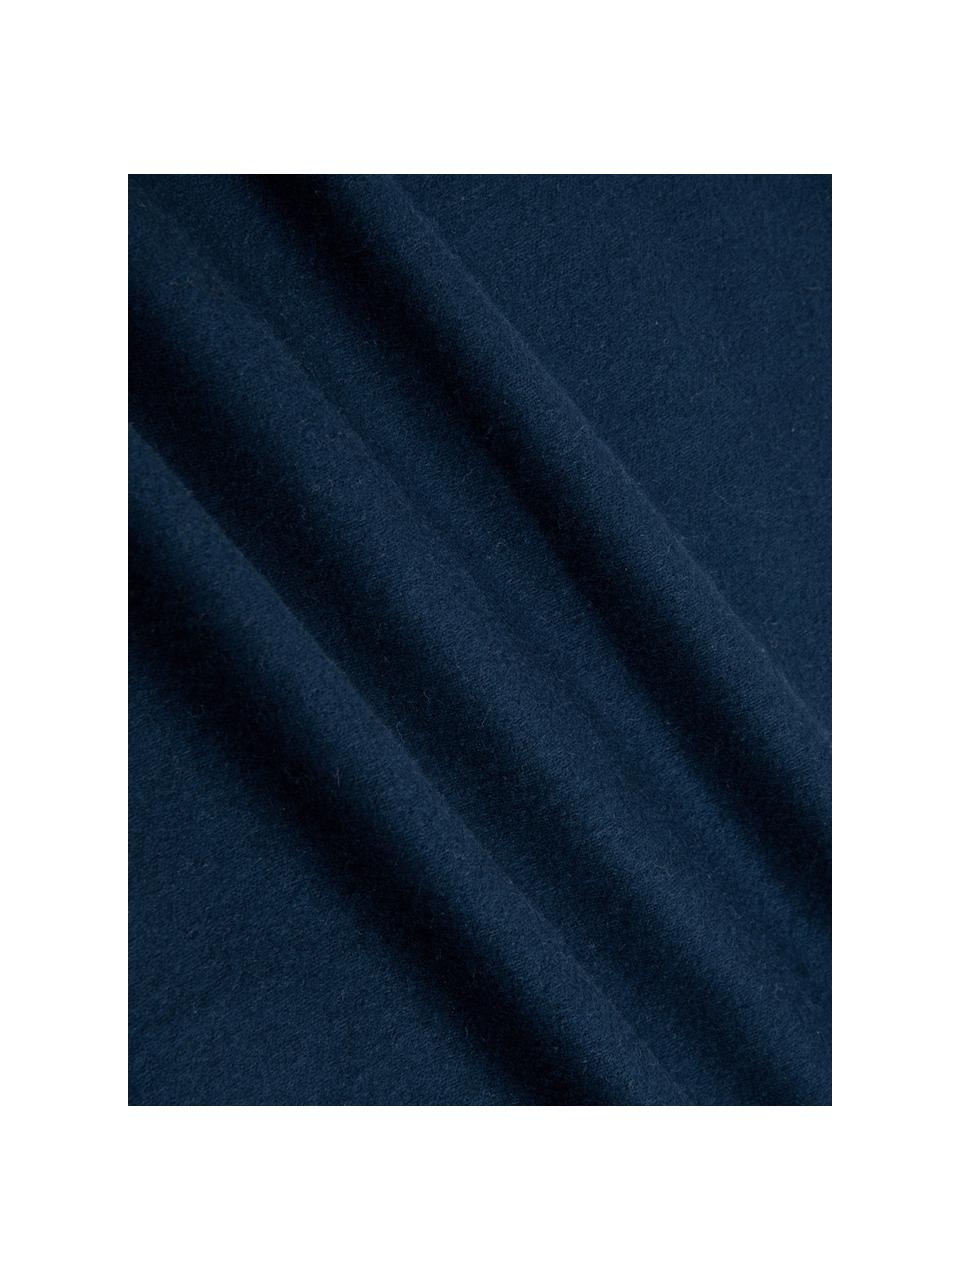 Flanelové povlaky na polštáře Biba, 2 ks, Tmavě modrá, Š 40 cm, D 80 cm